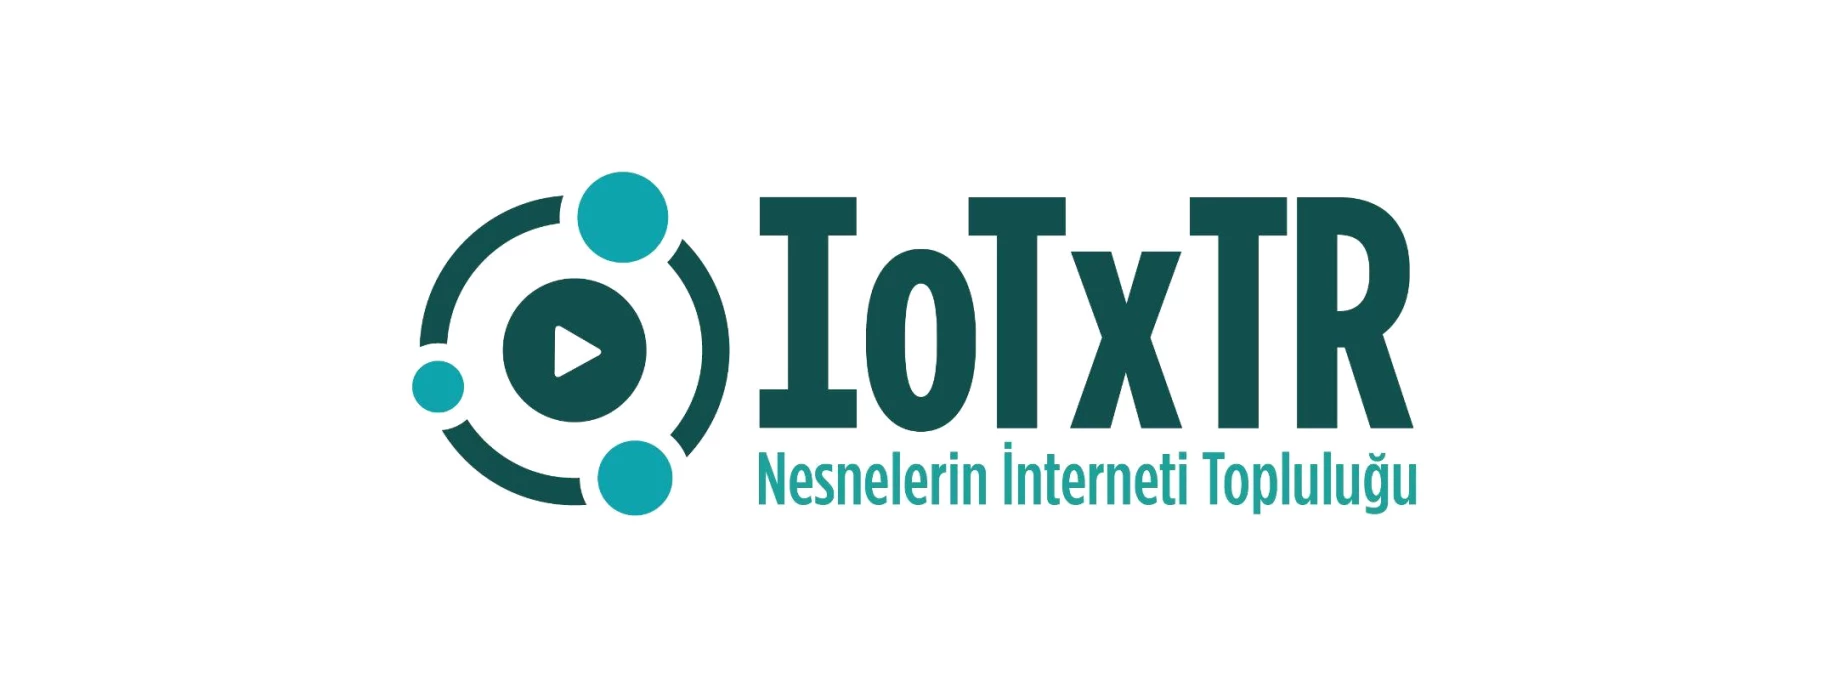 Iotxtr #35 -- "Skysens ile Lpwan ve Iot\'ye Özel Ağlar"